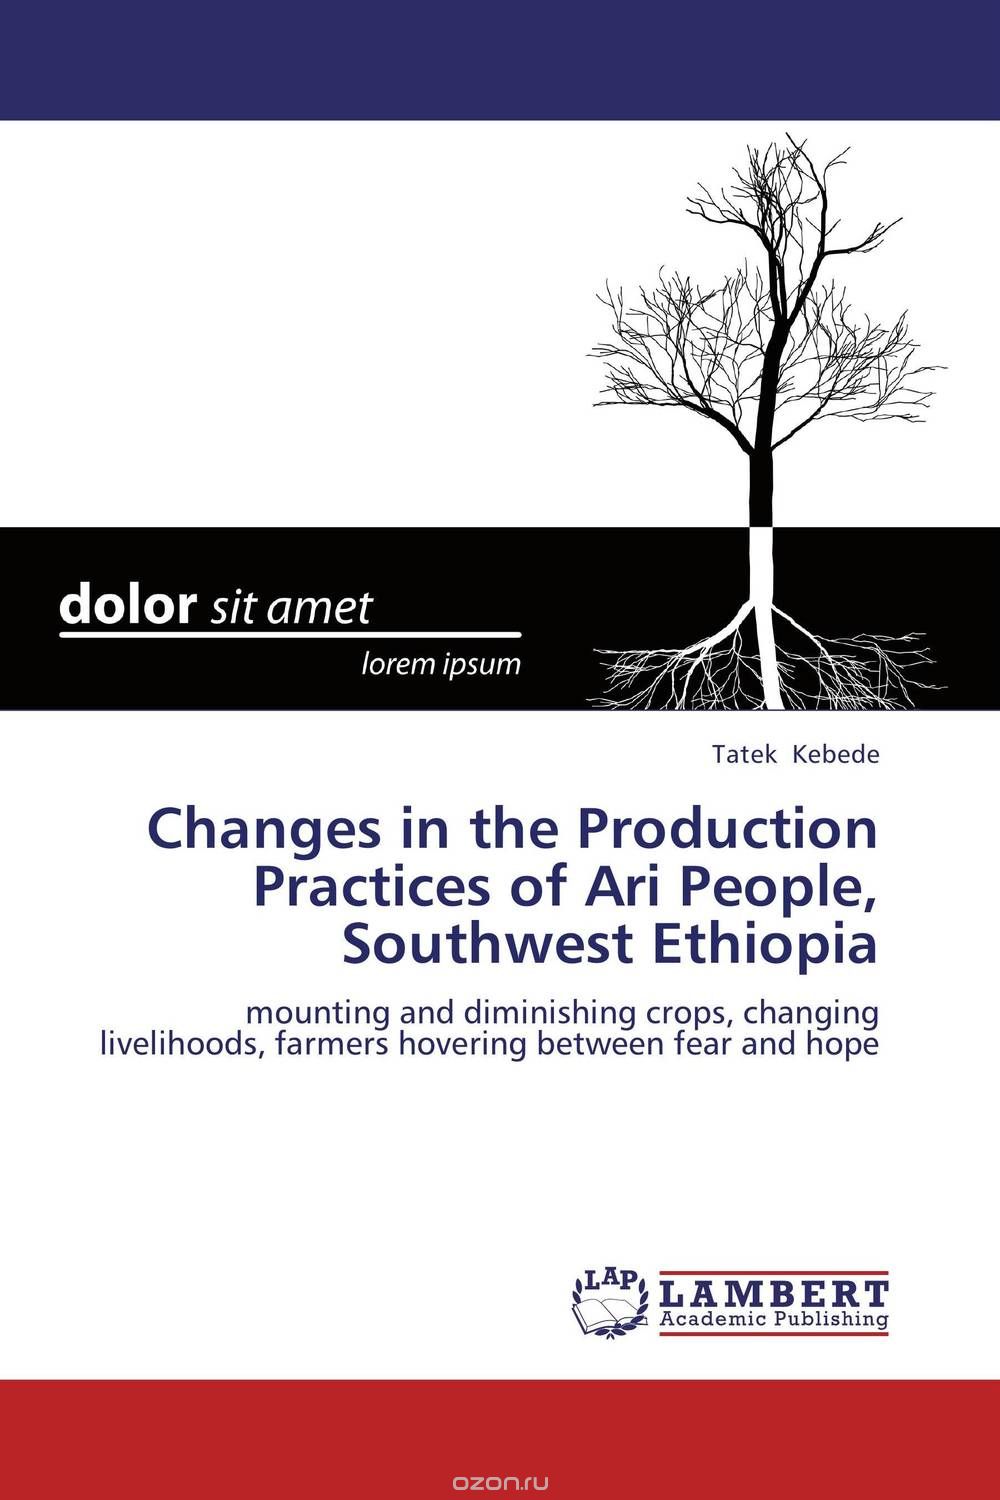 Скачать книгу "Changes in the Production Practices of Ari People, Southwest Ethiopia"